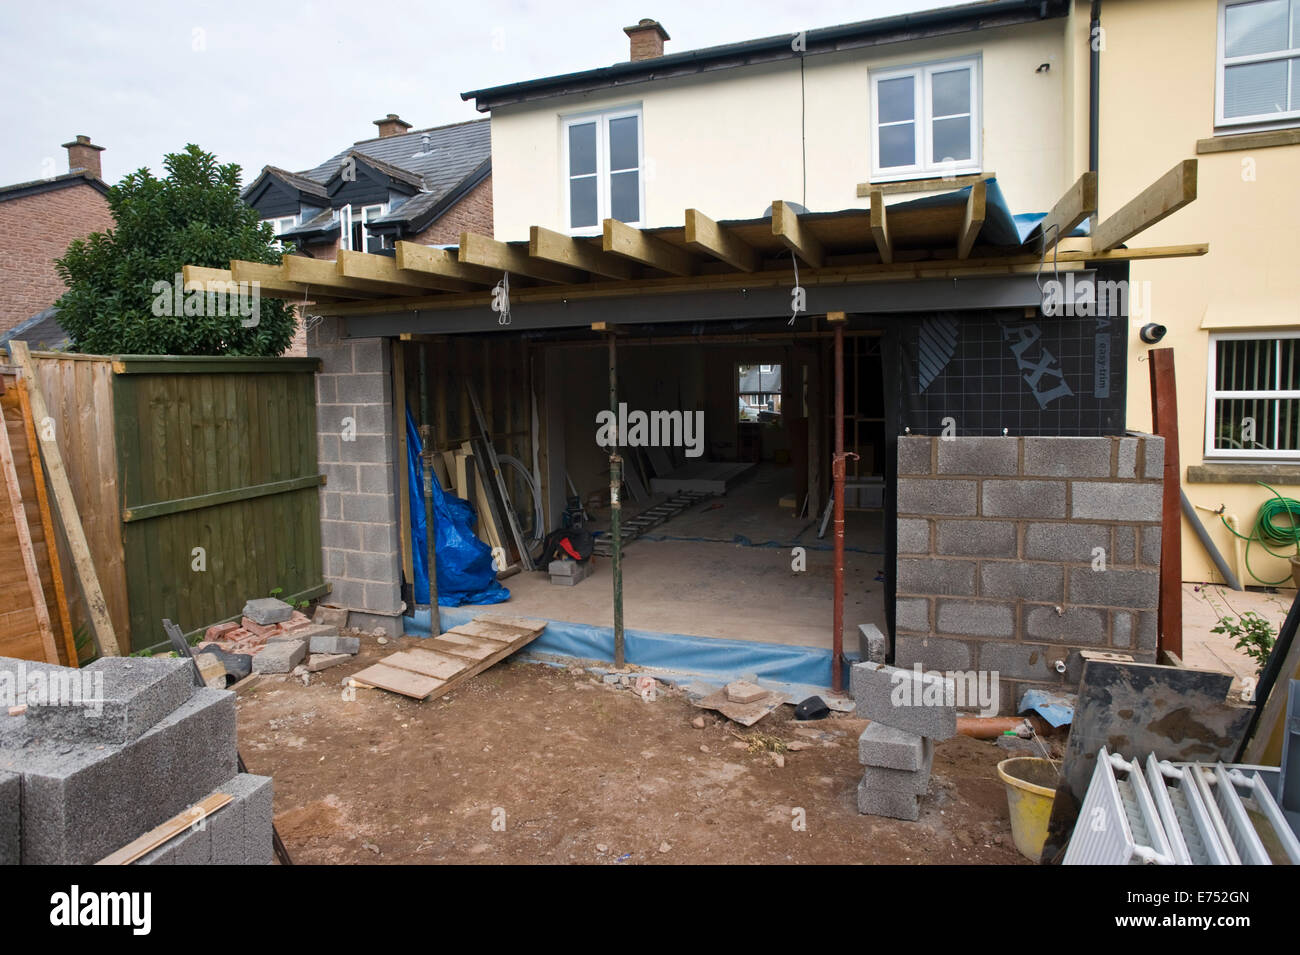 Mur de bloc en cours de construction pour l'extension maison Hay-on-Wye Powys Pays de Galles UK Banque D'Images